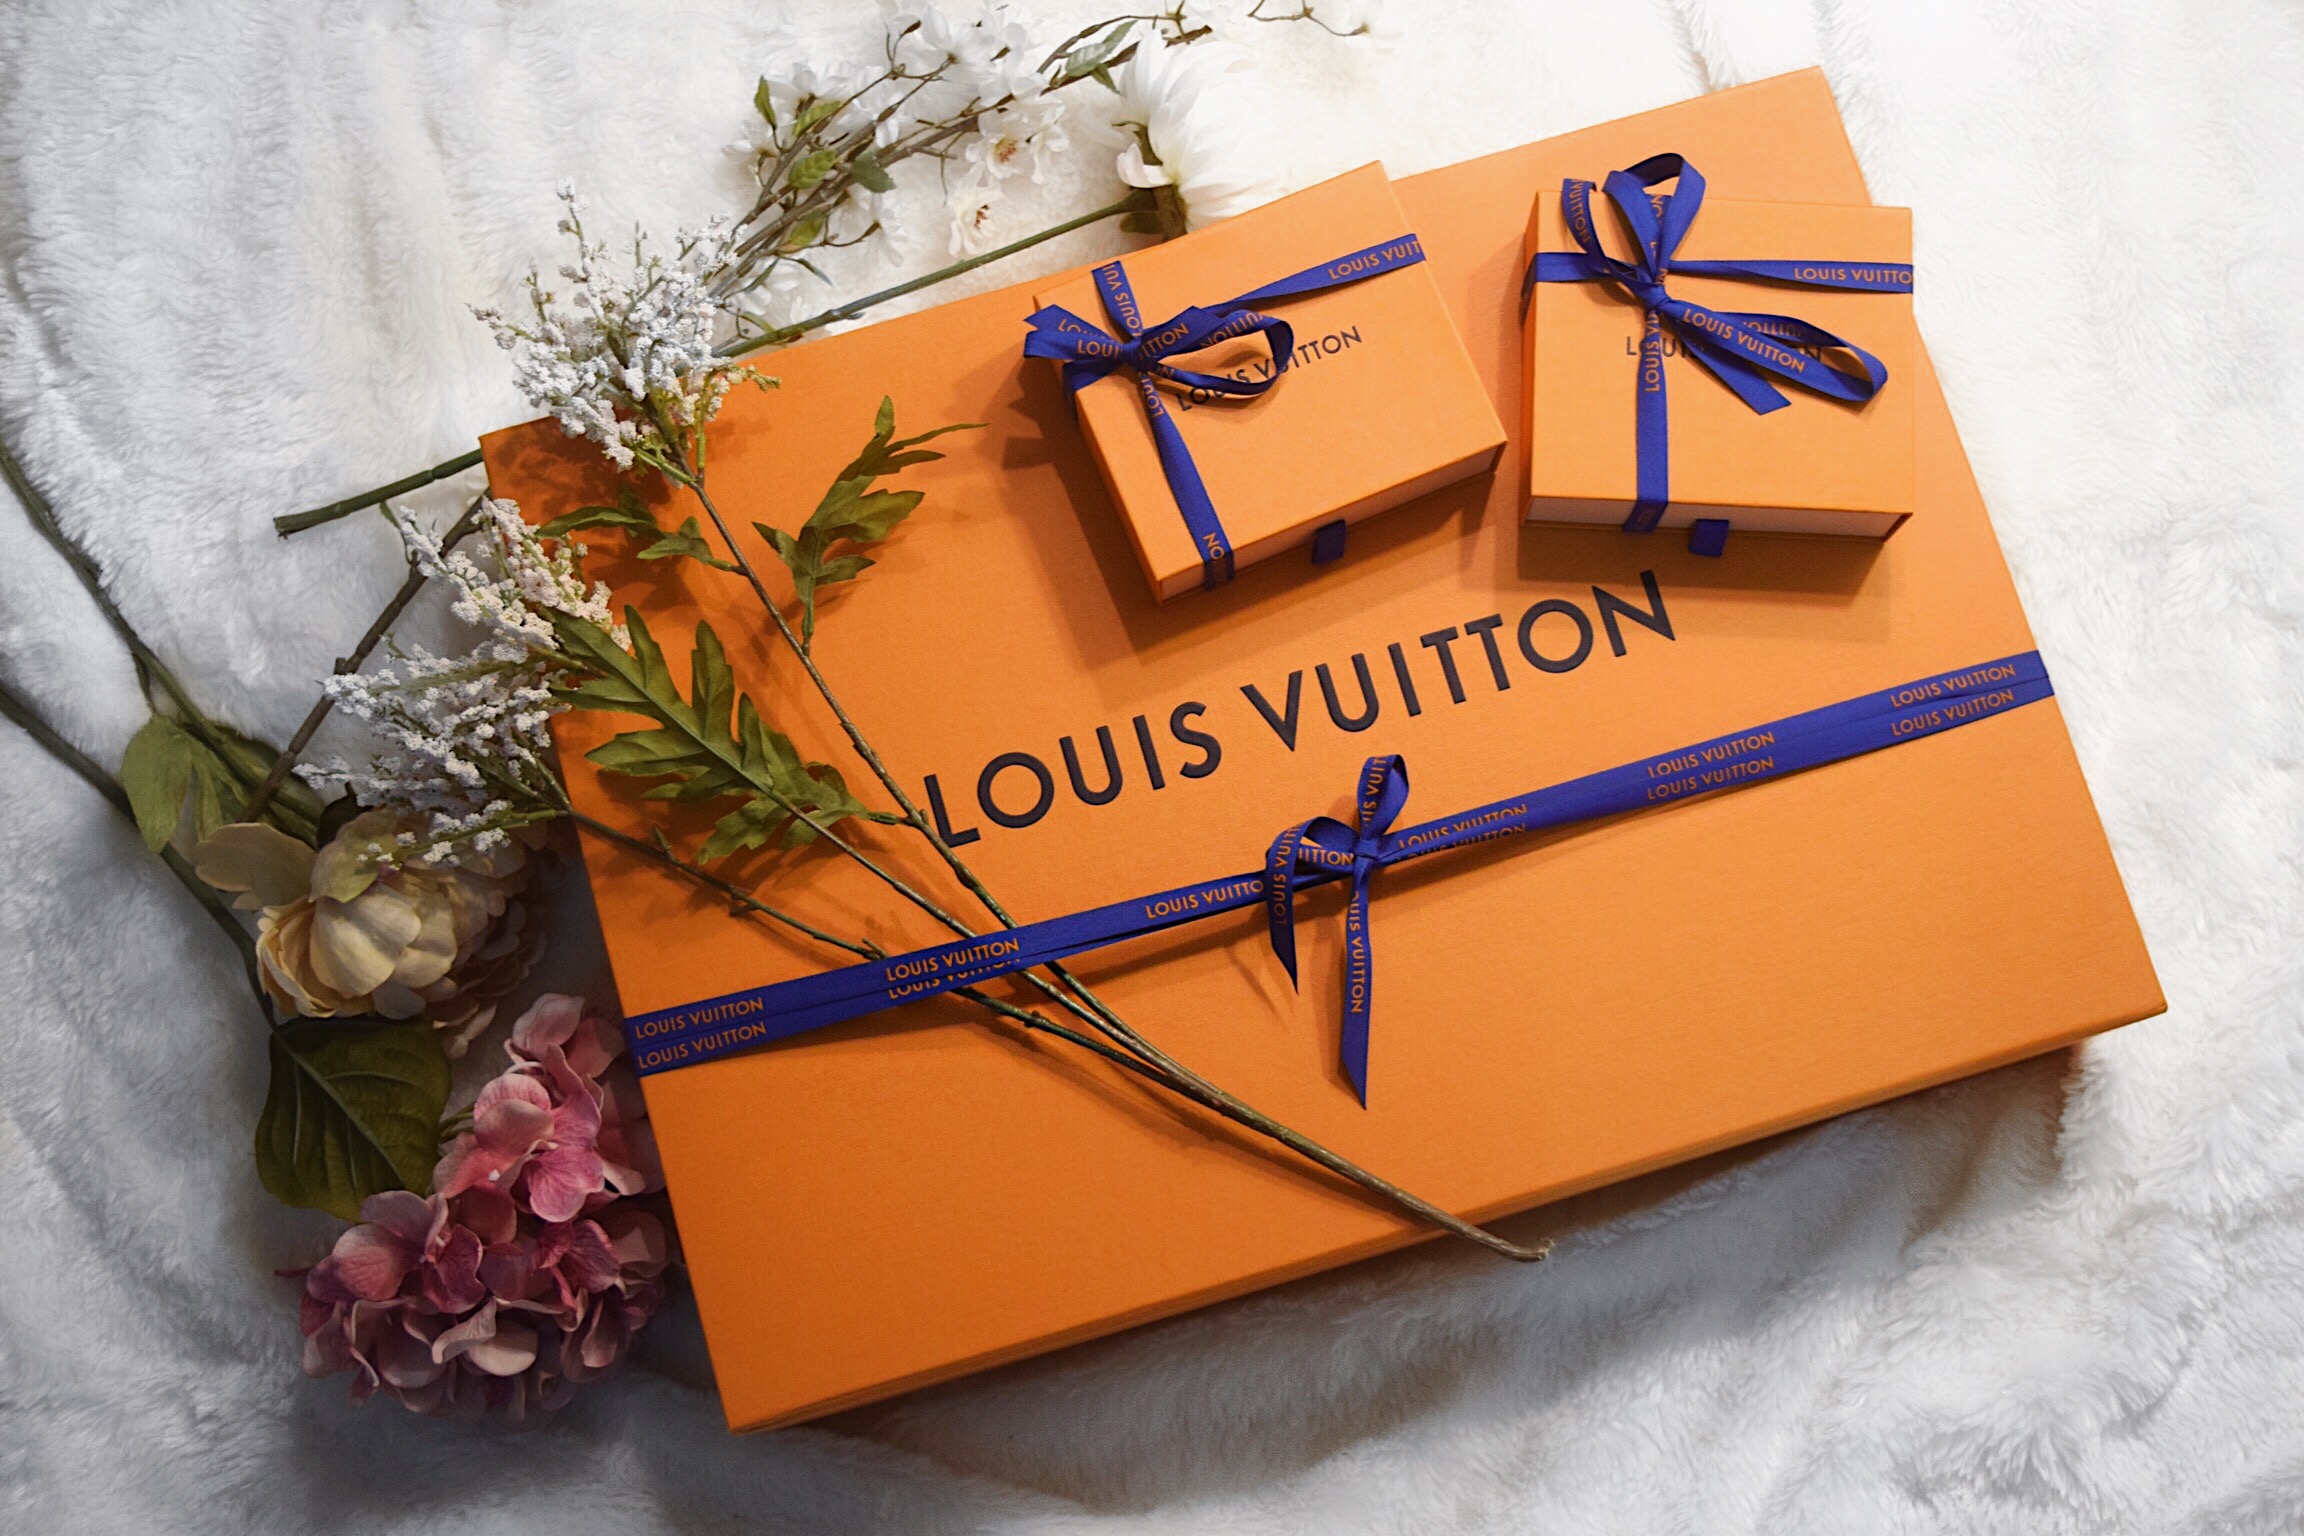 Louis Vuitton Haul — EMILY HU